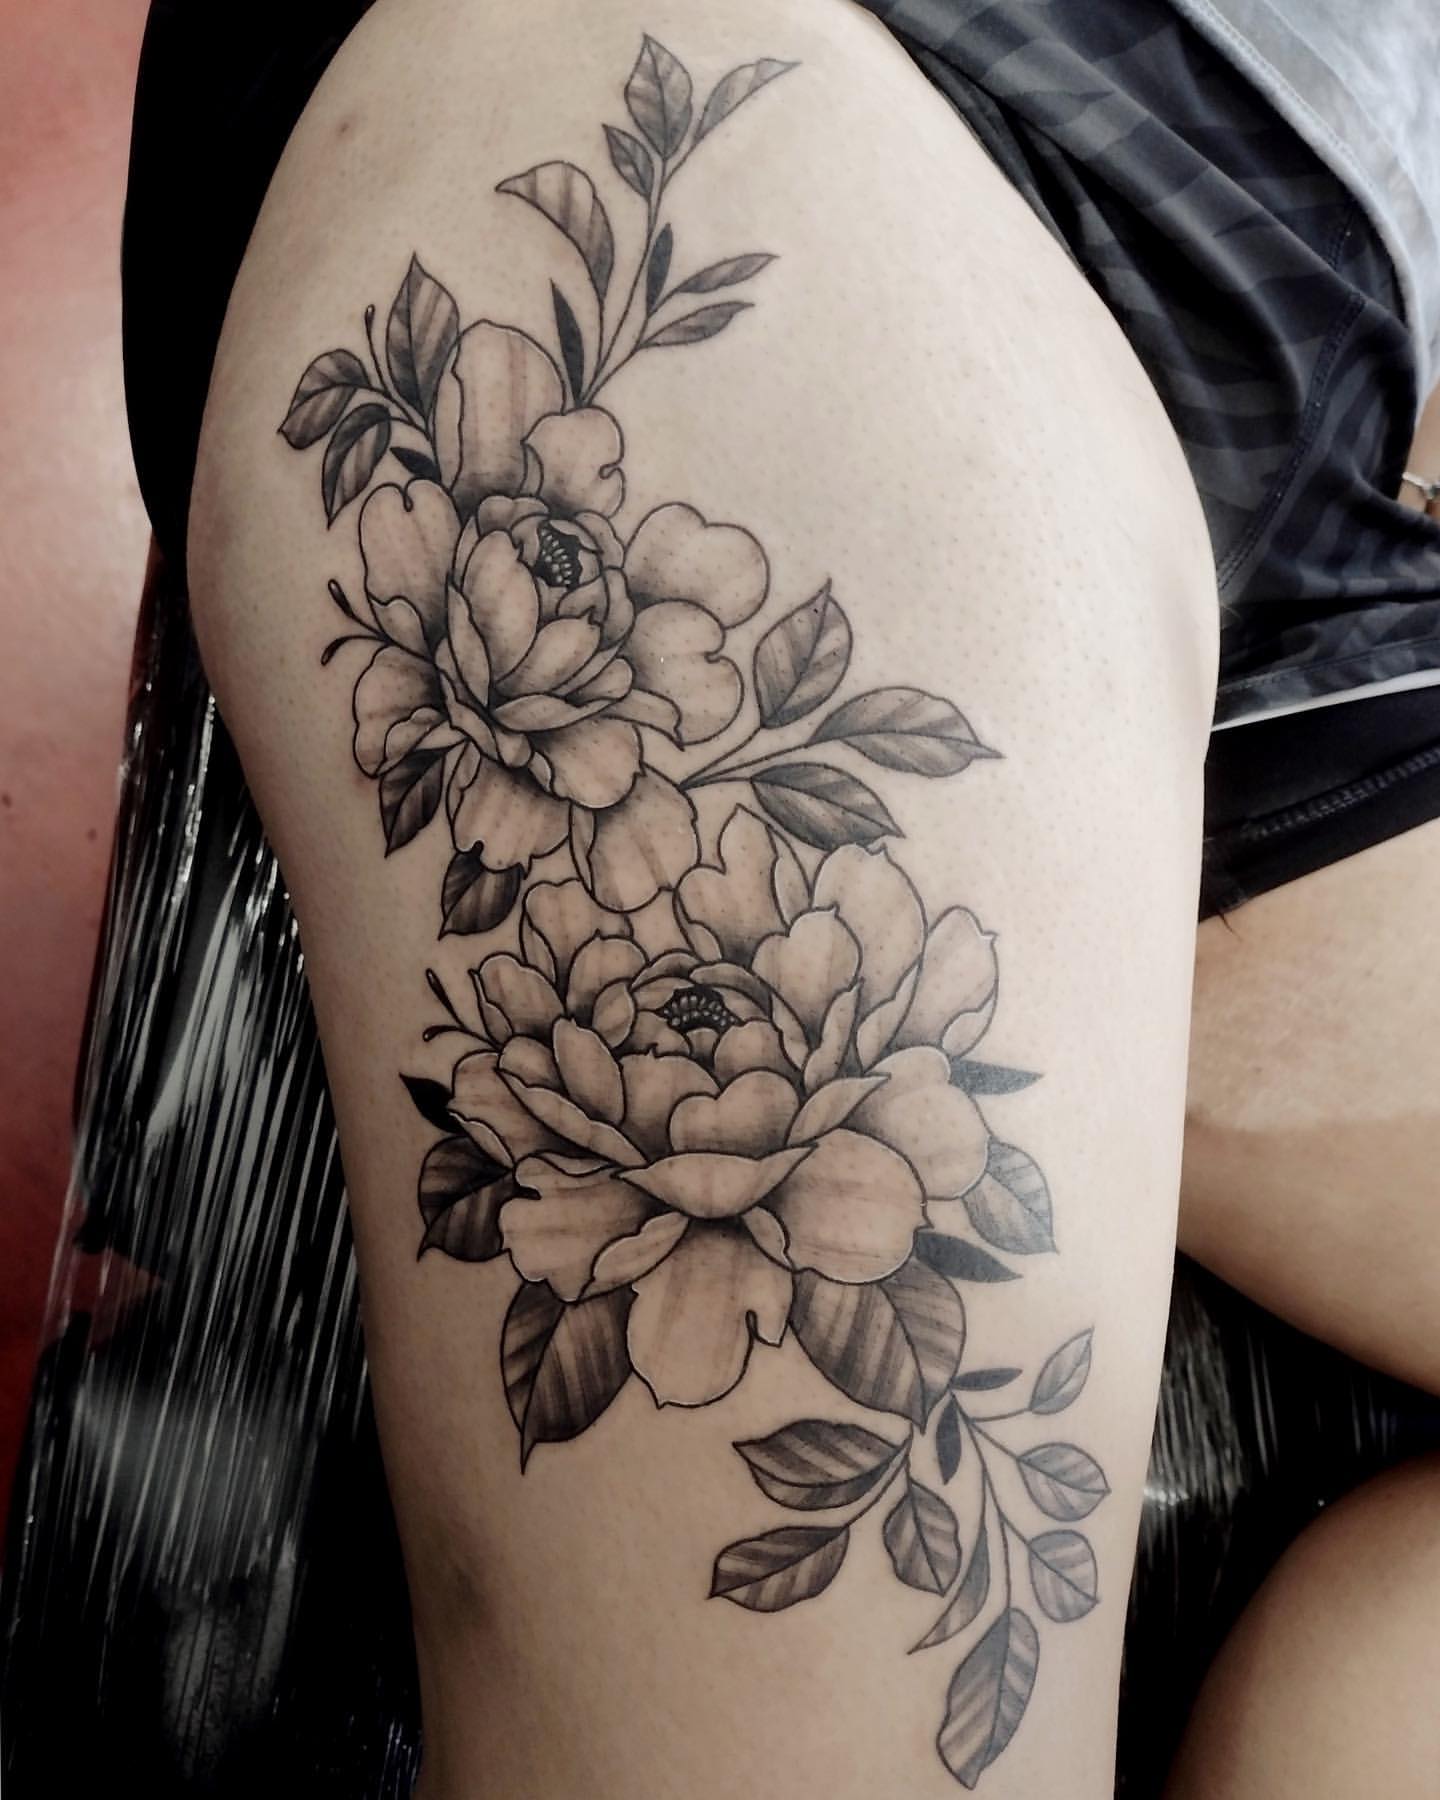 Flower Tattoo Ideas, thigh tattoo